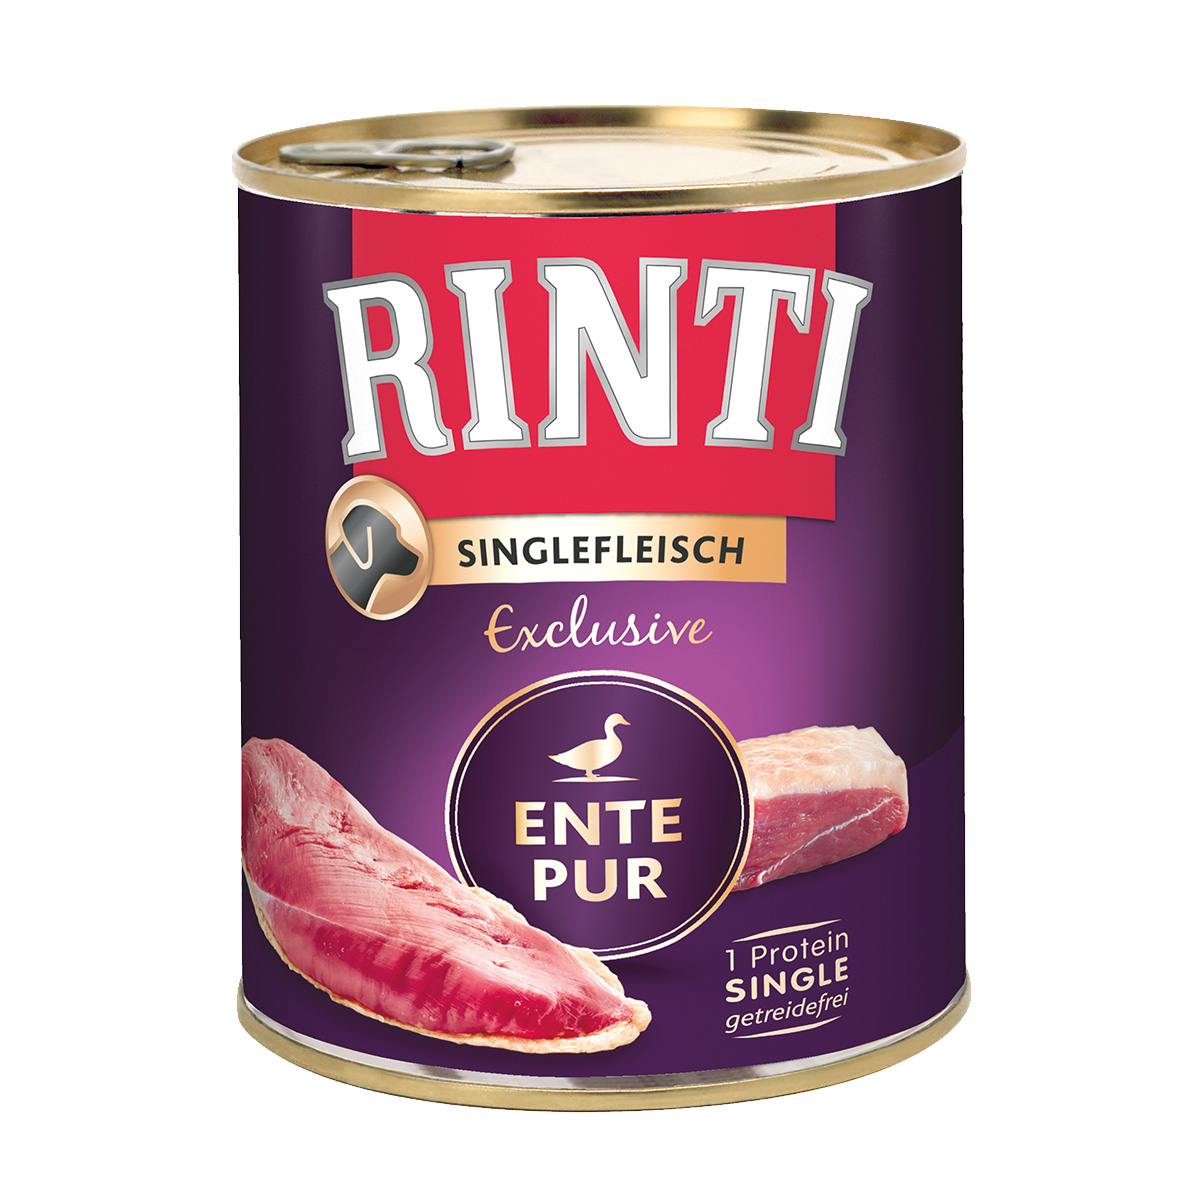 RINTI Singlefleisch Exclusive Ente Pur